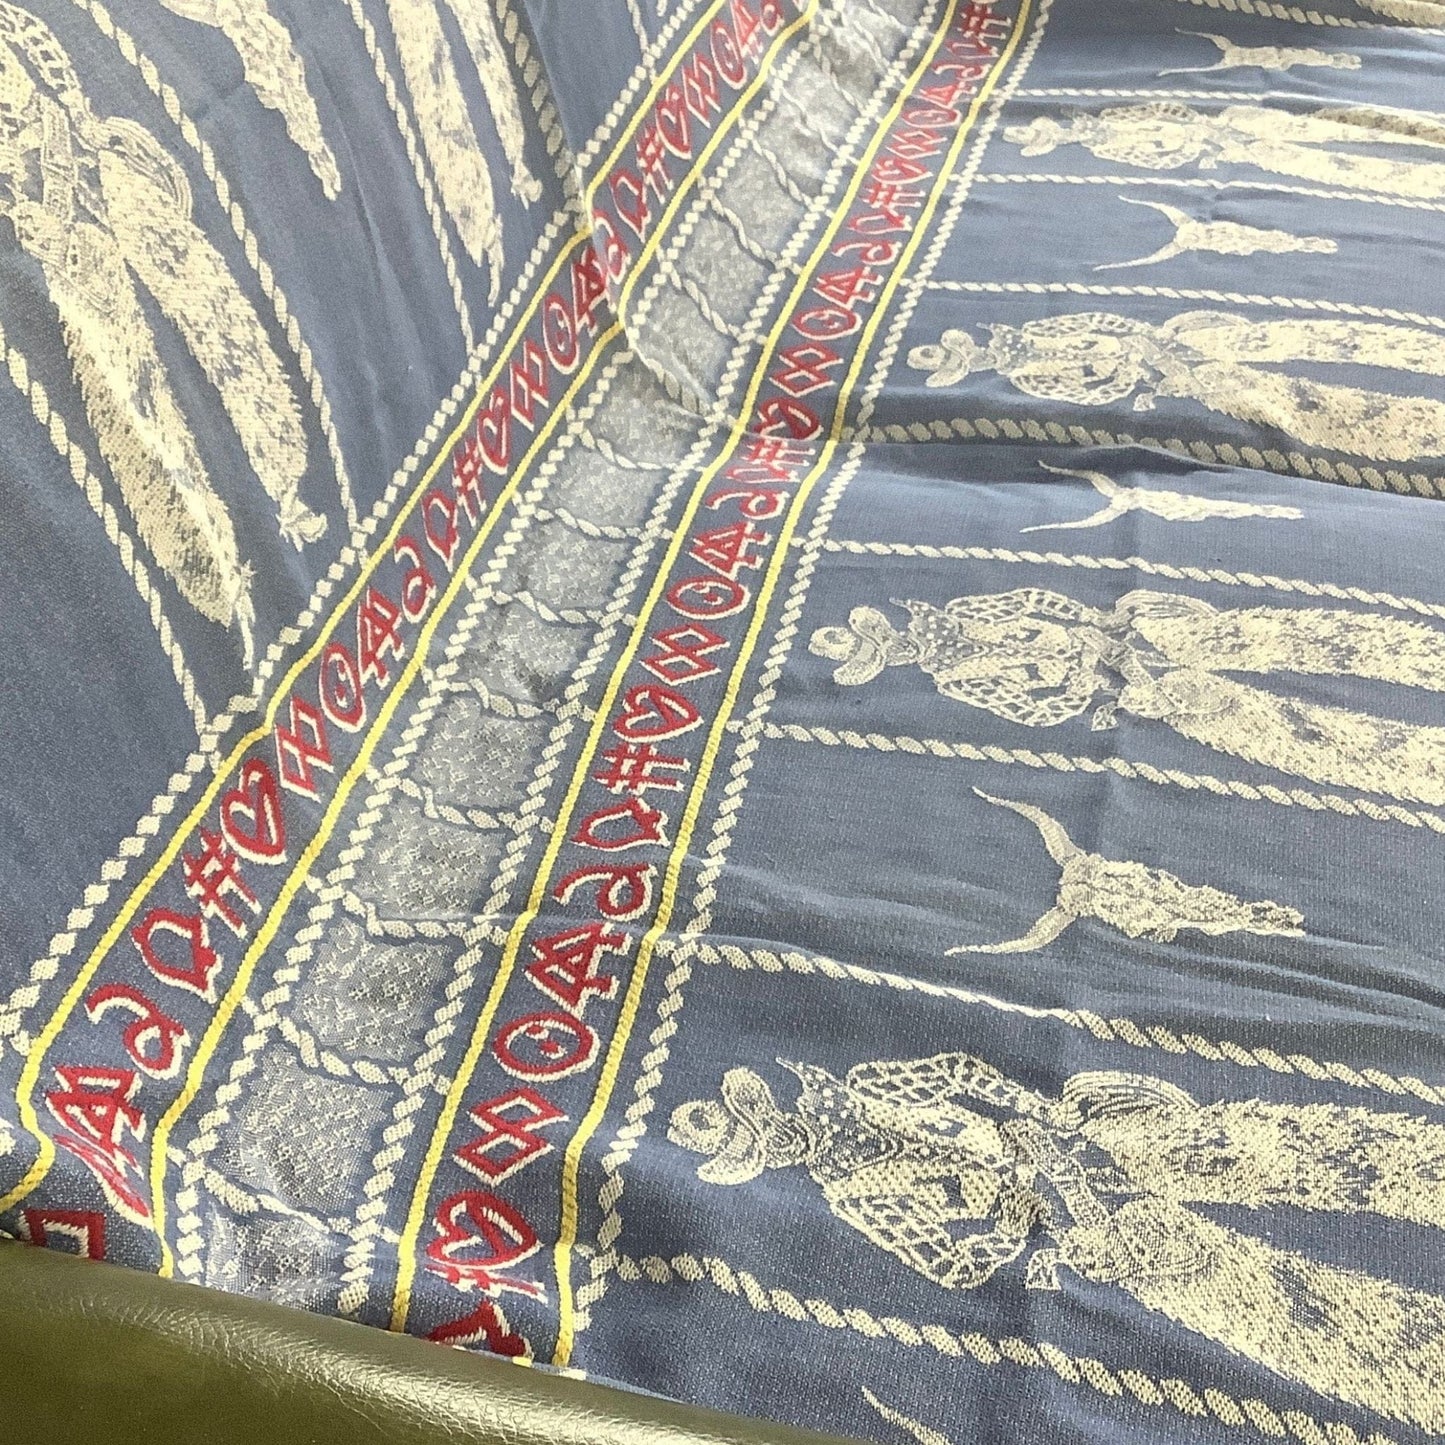 Bates Buckaroo Bedspread Multi / Cotton / Vintage 1950s